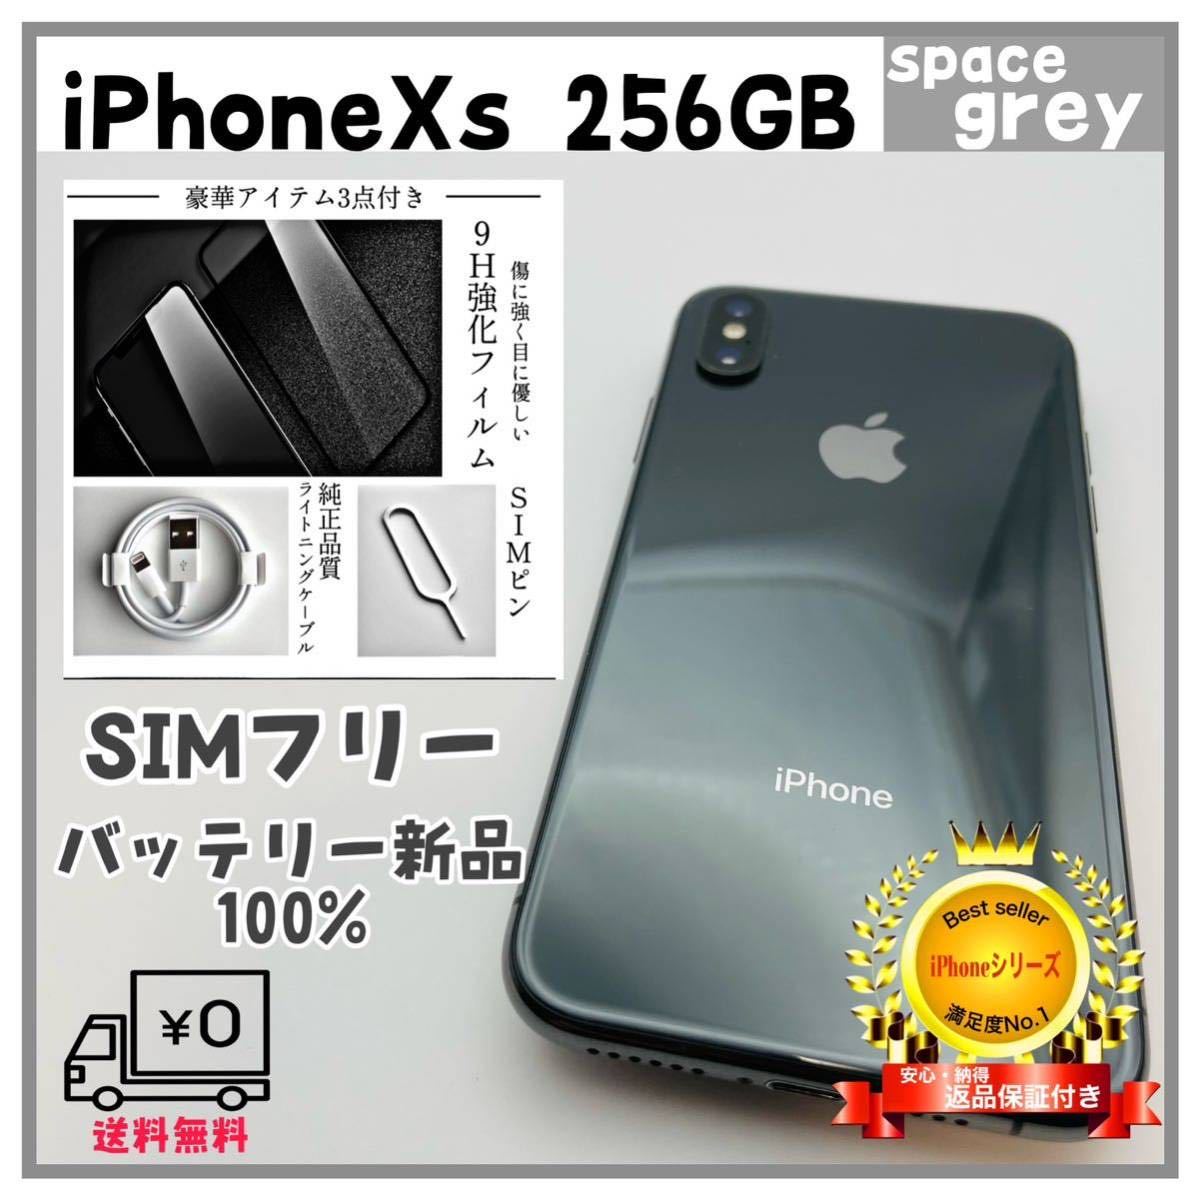 売れ筋商品 【極美品】iPhoneXs 256GB space grey SIMフリー iPhone